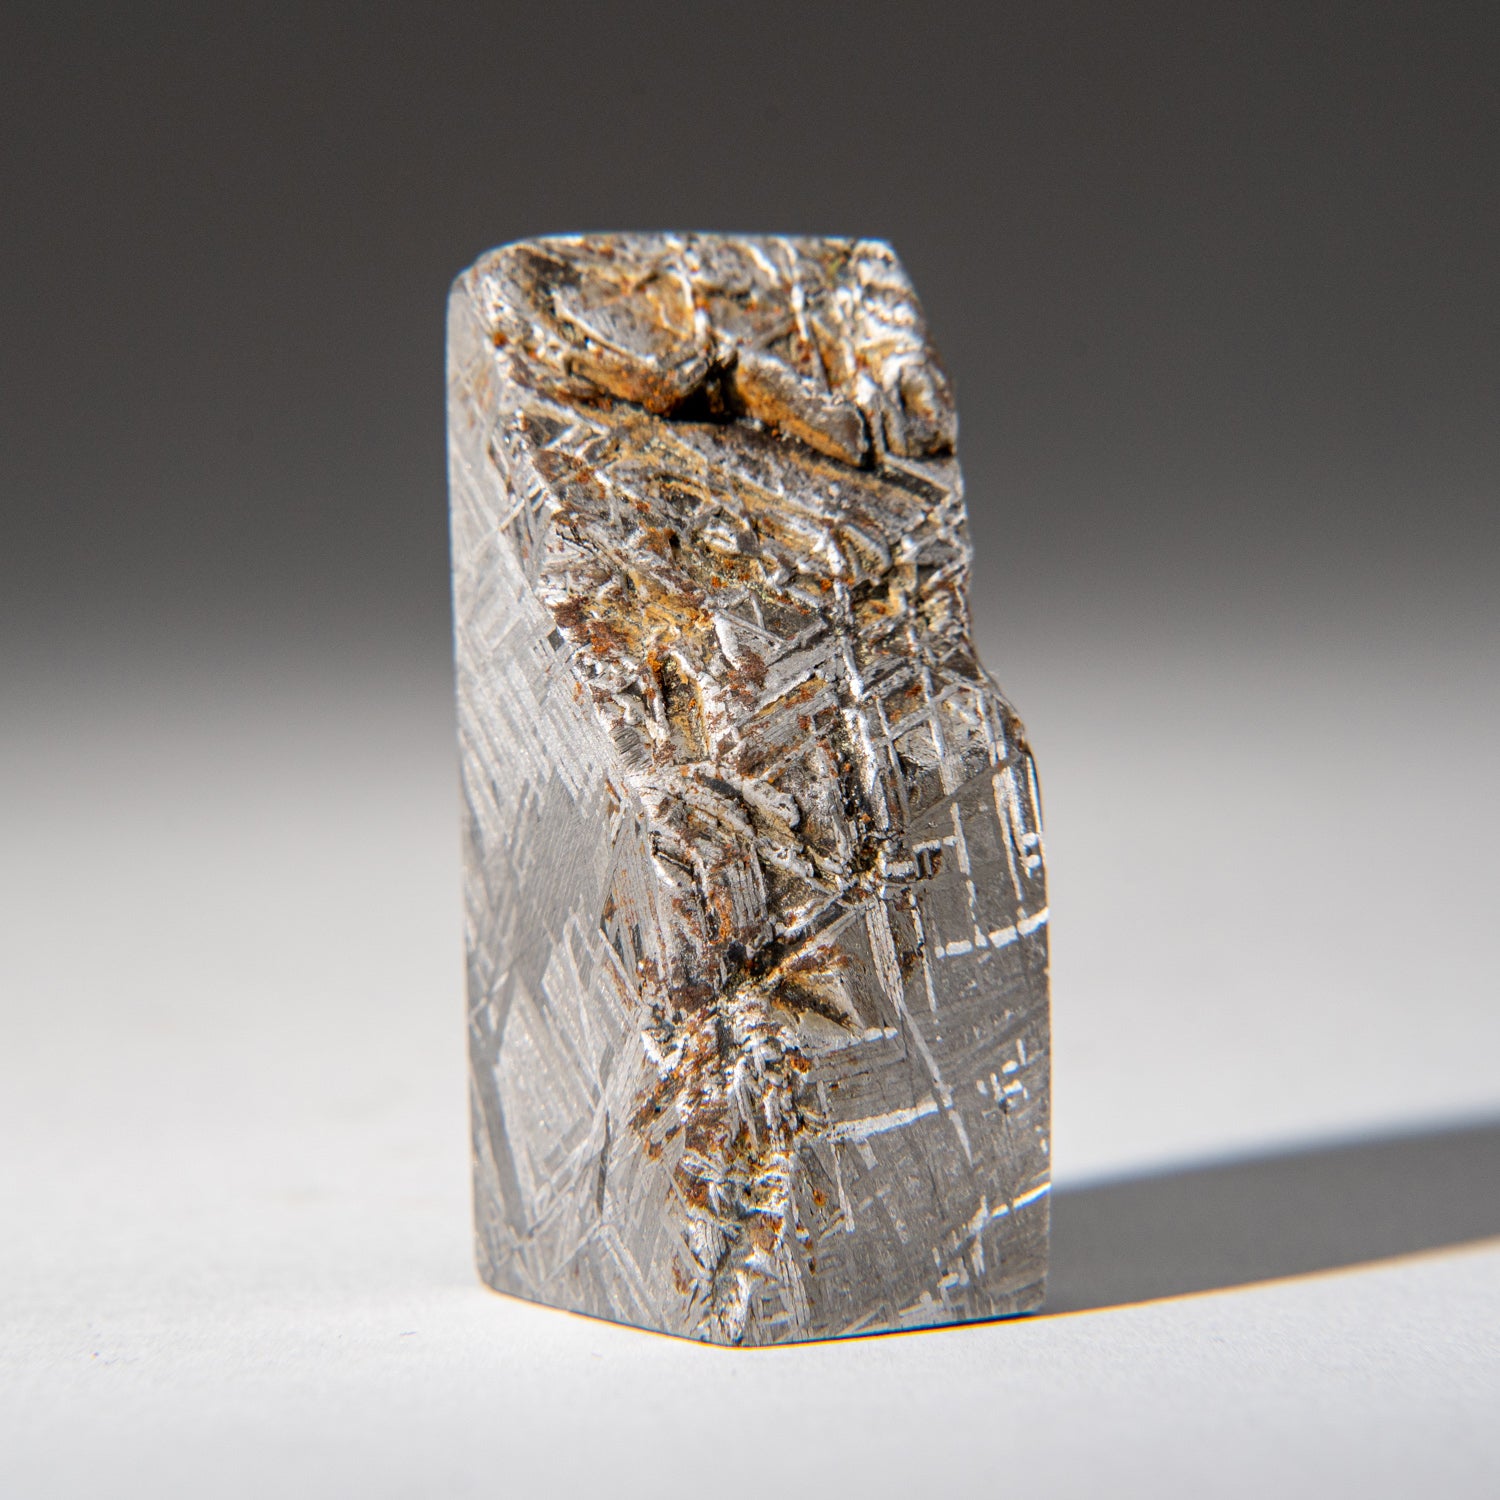 Genuine Muonionalusta Meteorite Slice (142.9 grams)